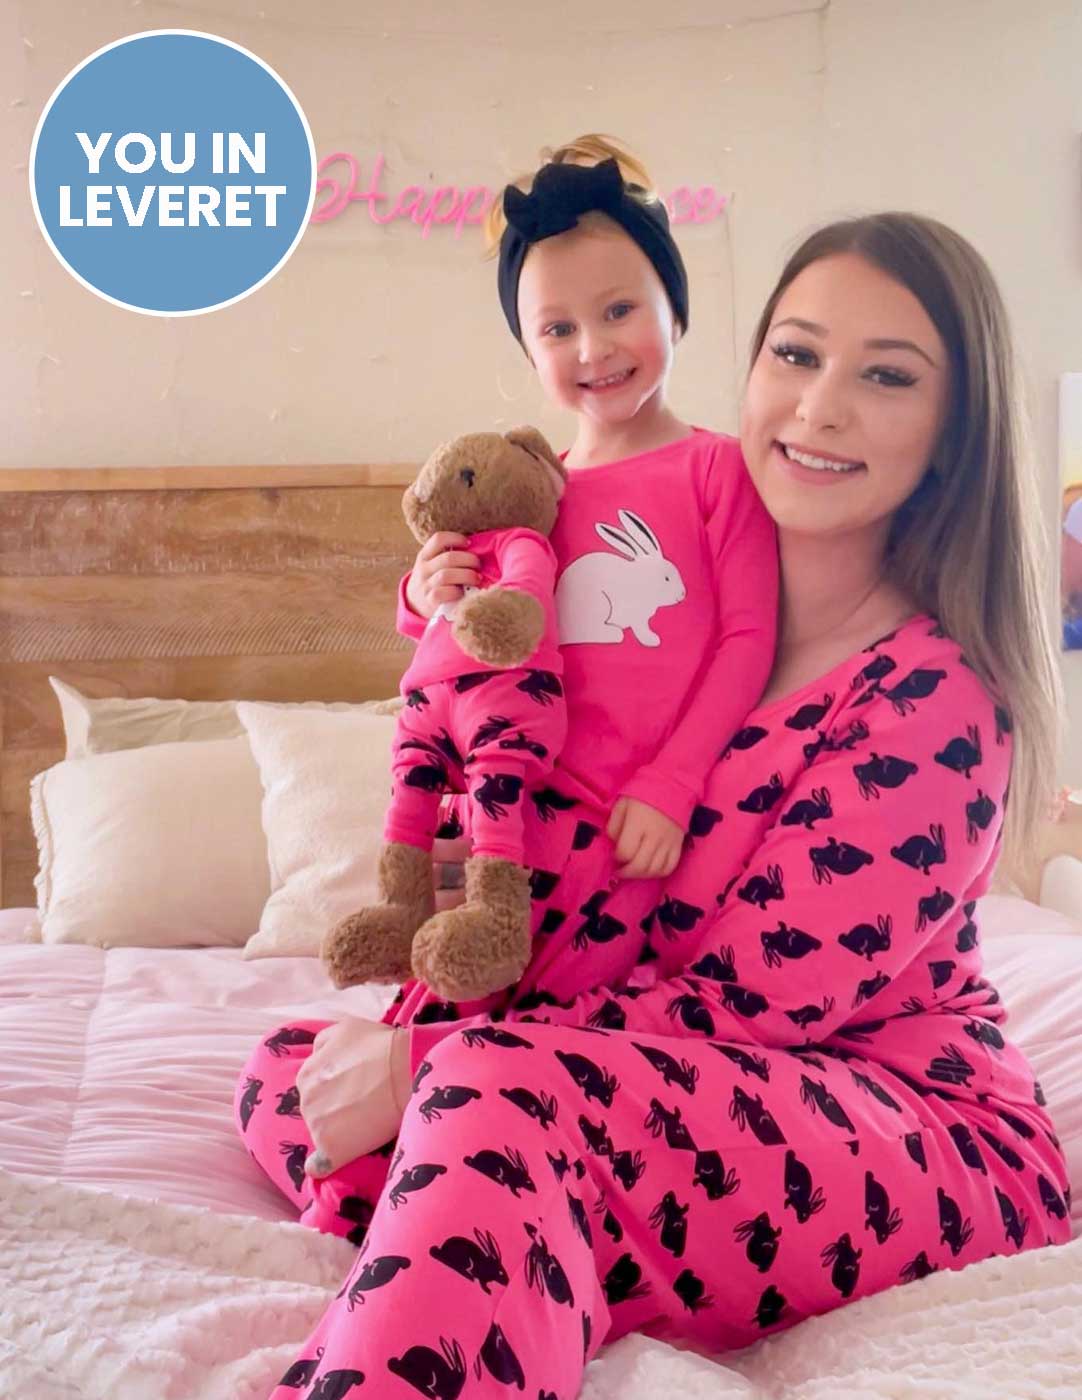 Hot Pink Bunny Rabbit Cotton Pajamas